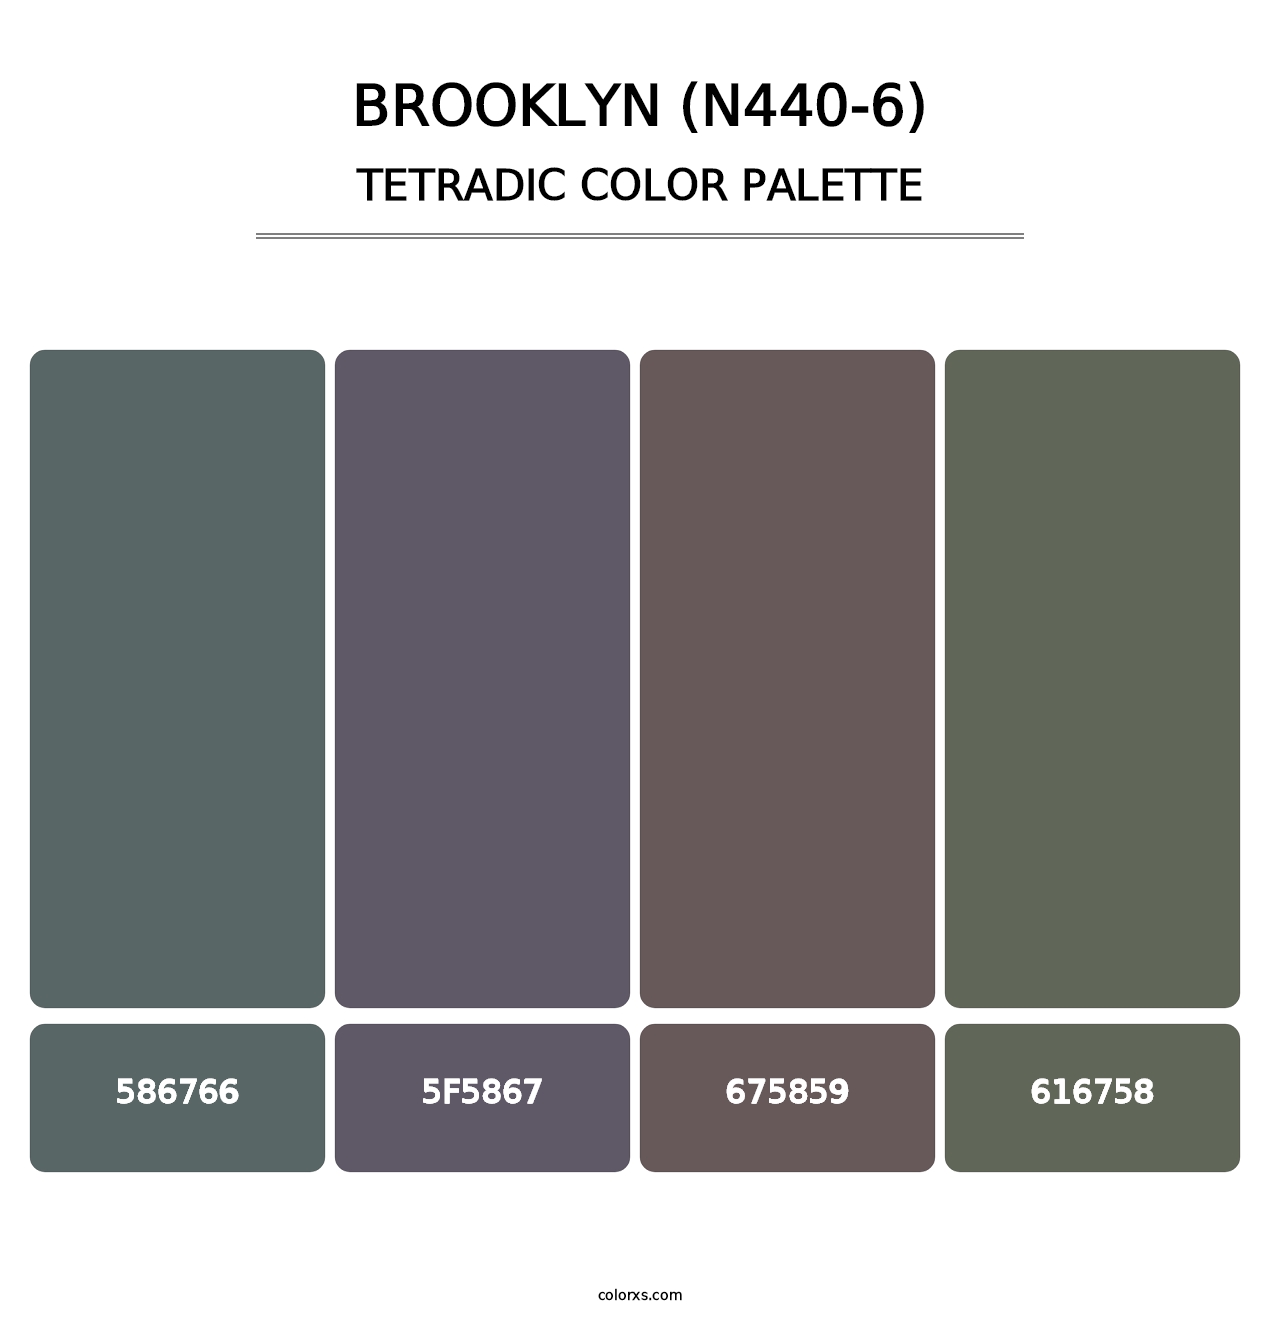 Brooklyn (N440-6) - Tetradic Color Palette